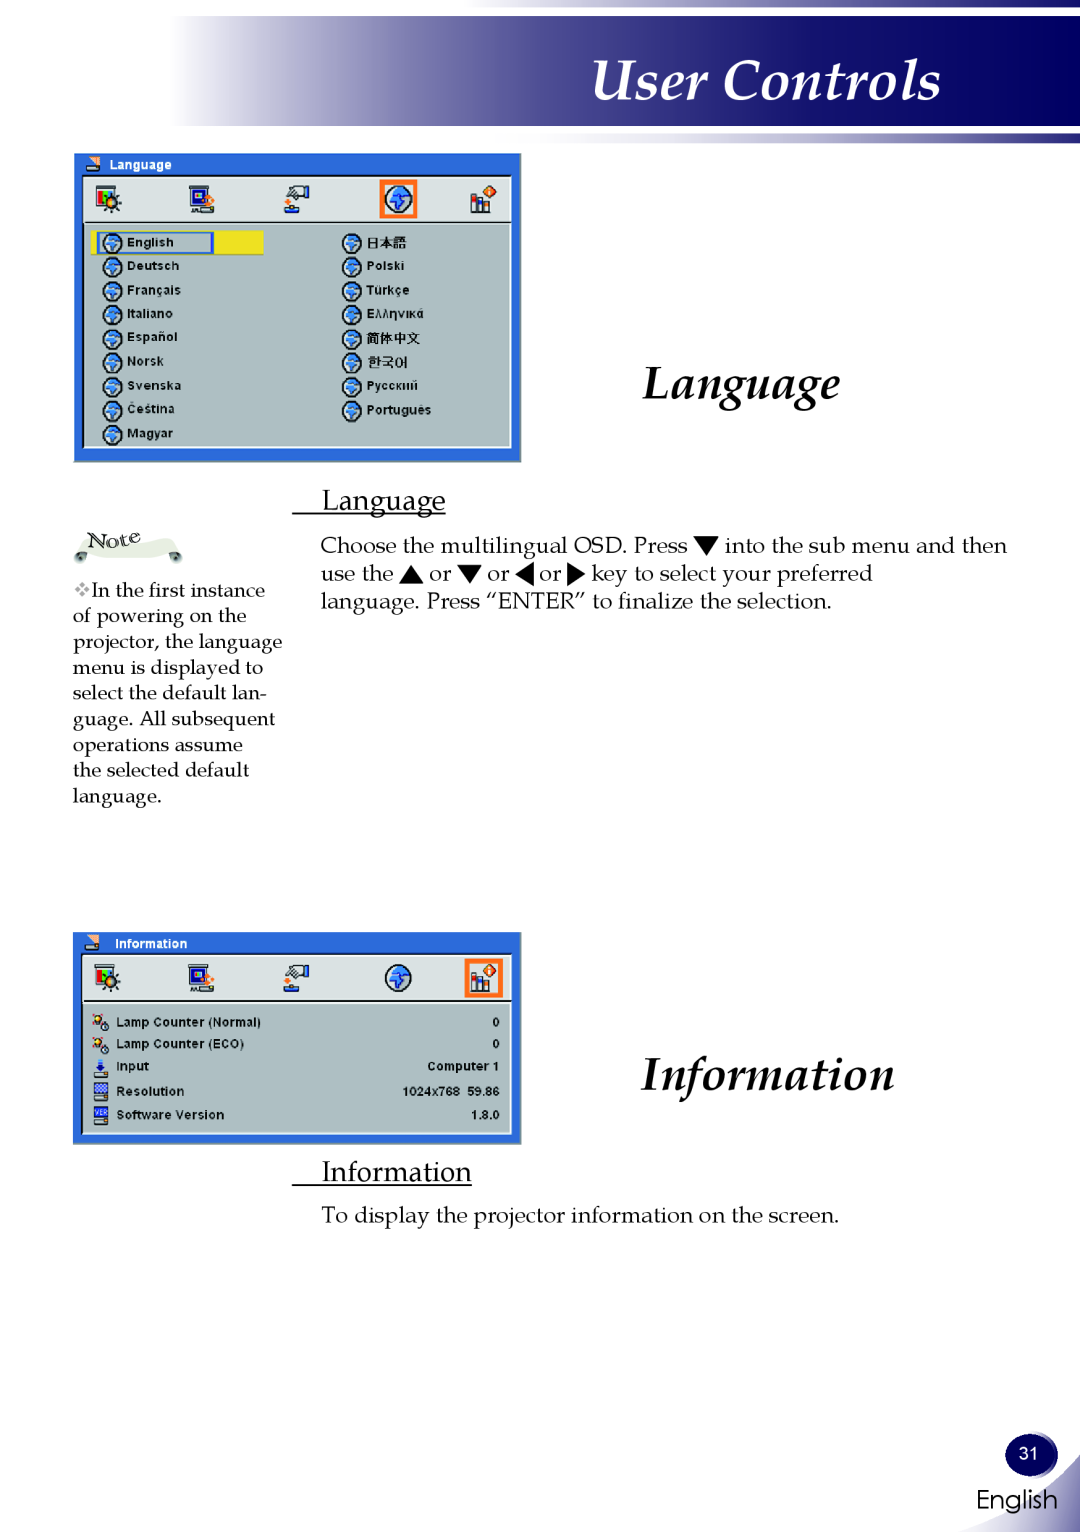 Sanyo PDG-DWL100 owner manual Language, Information, User Controls, English 